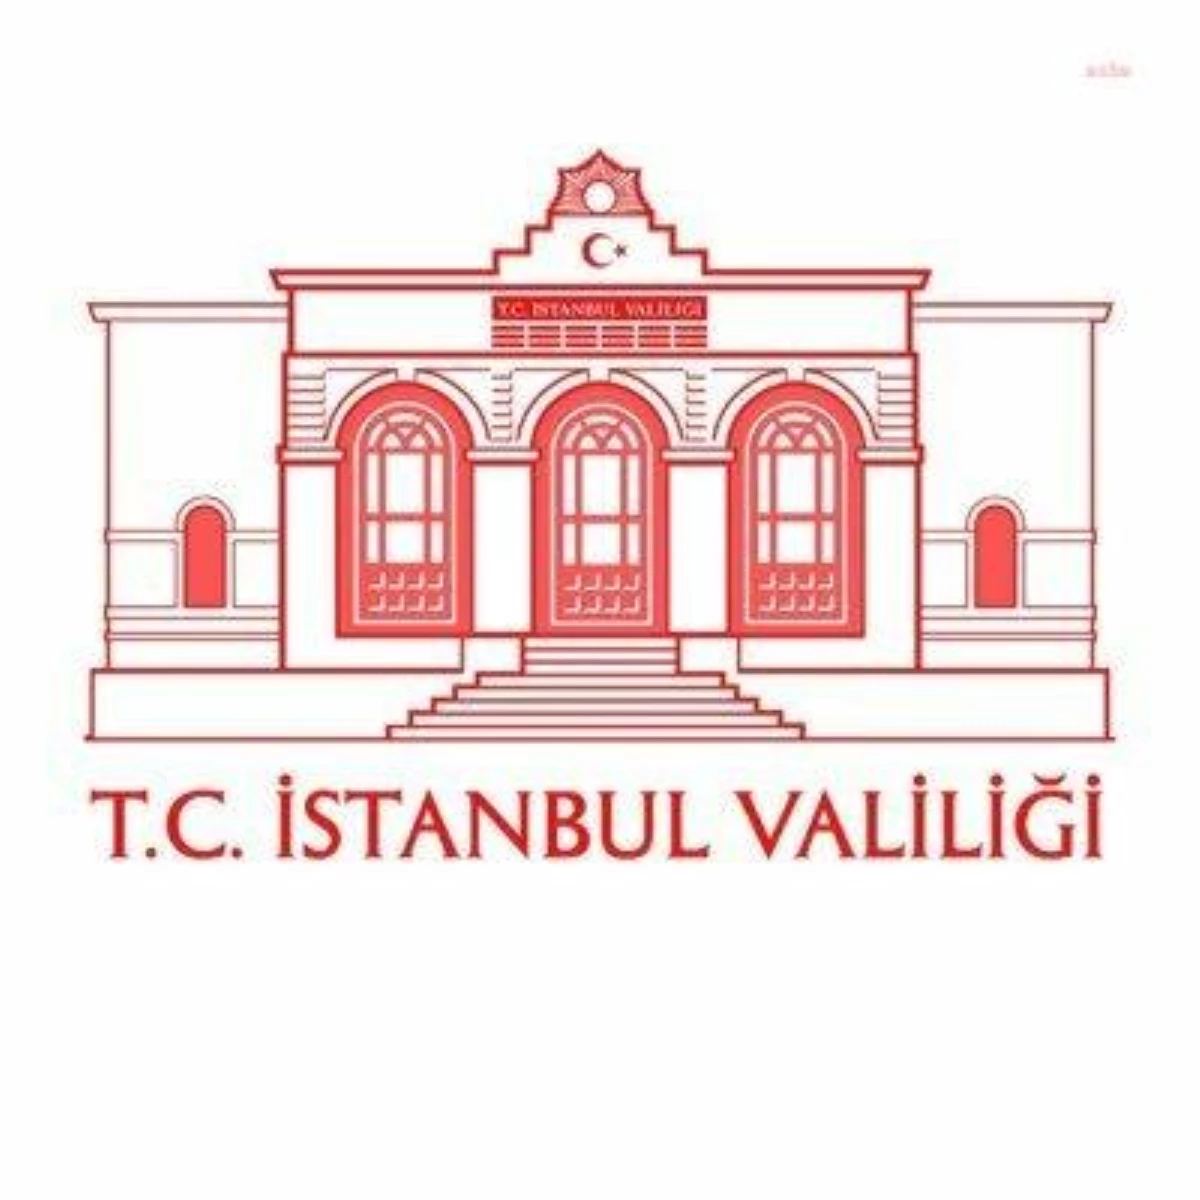 İstanbul Valiliği: Taşkından Zarar Gören Konutlar İçin 5 Bin Tl, İşyerleri İçin 10 Bin TL Yardım Ödemesi Yapılmaya Başlanmıştır